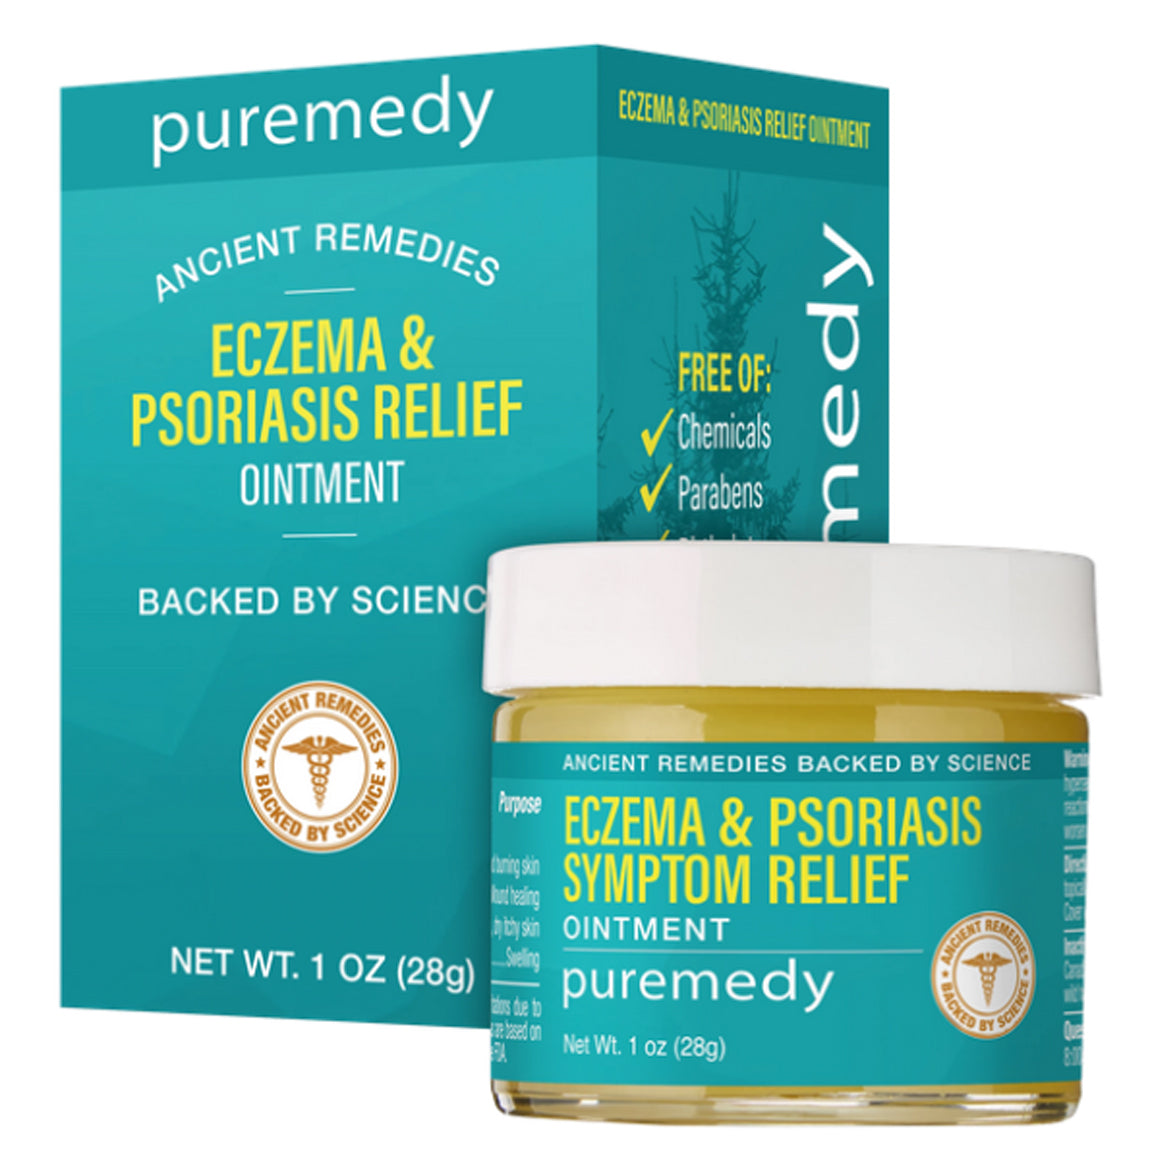 Eczema & Psoriasis Relief